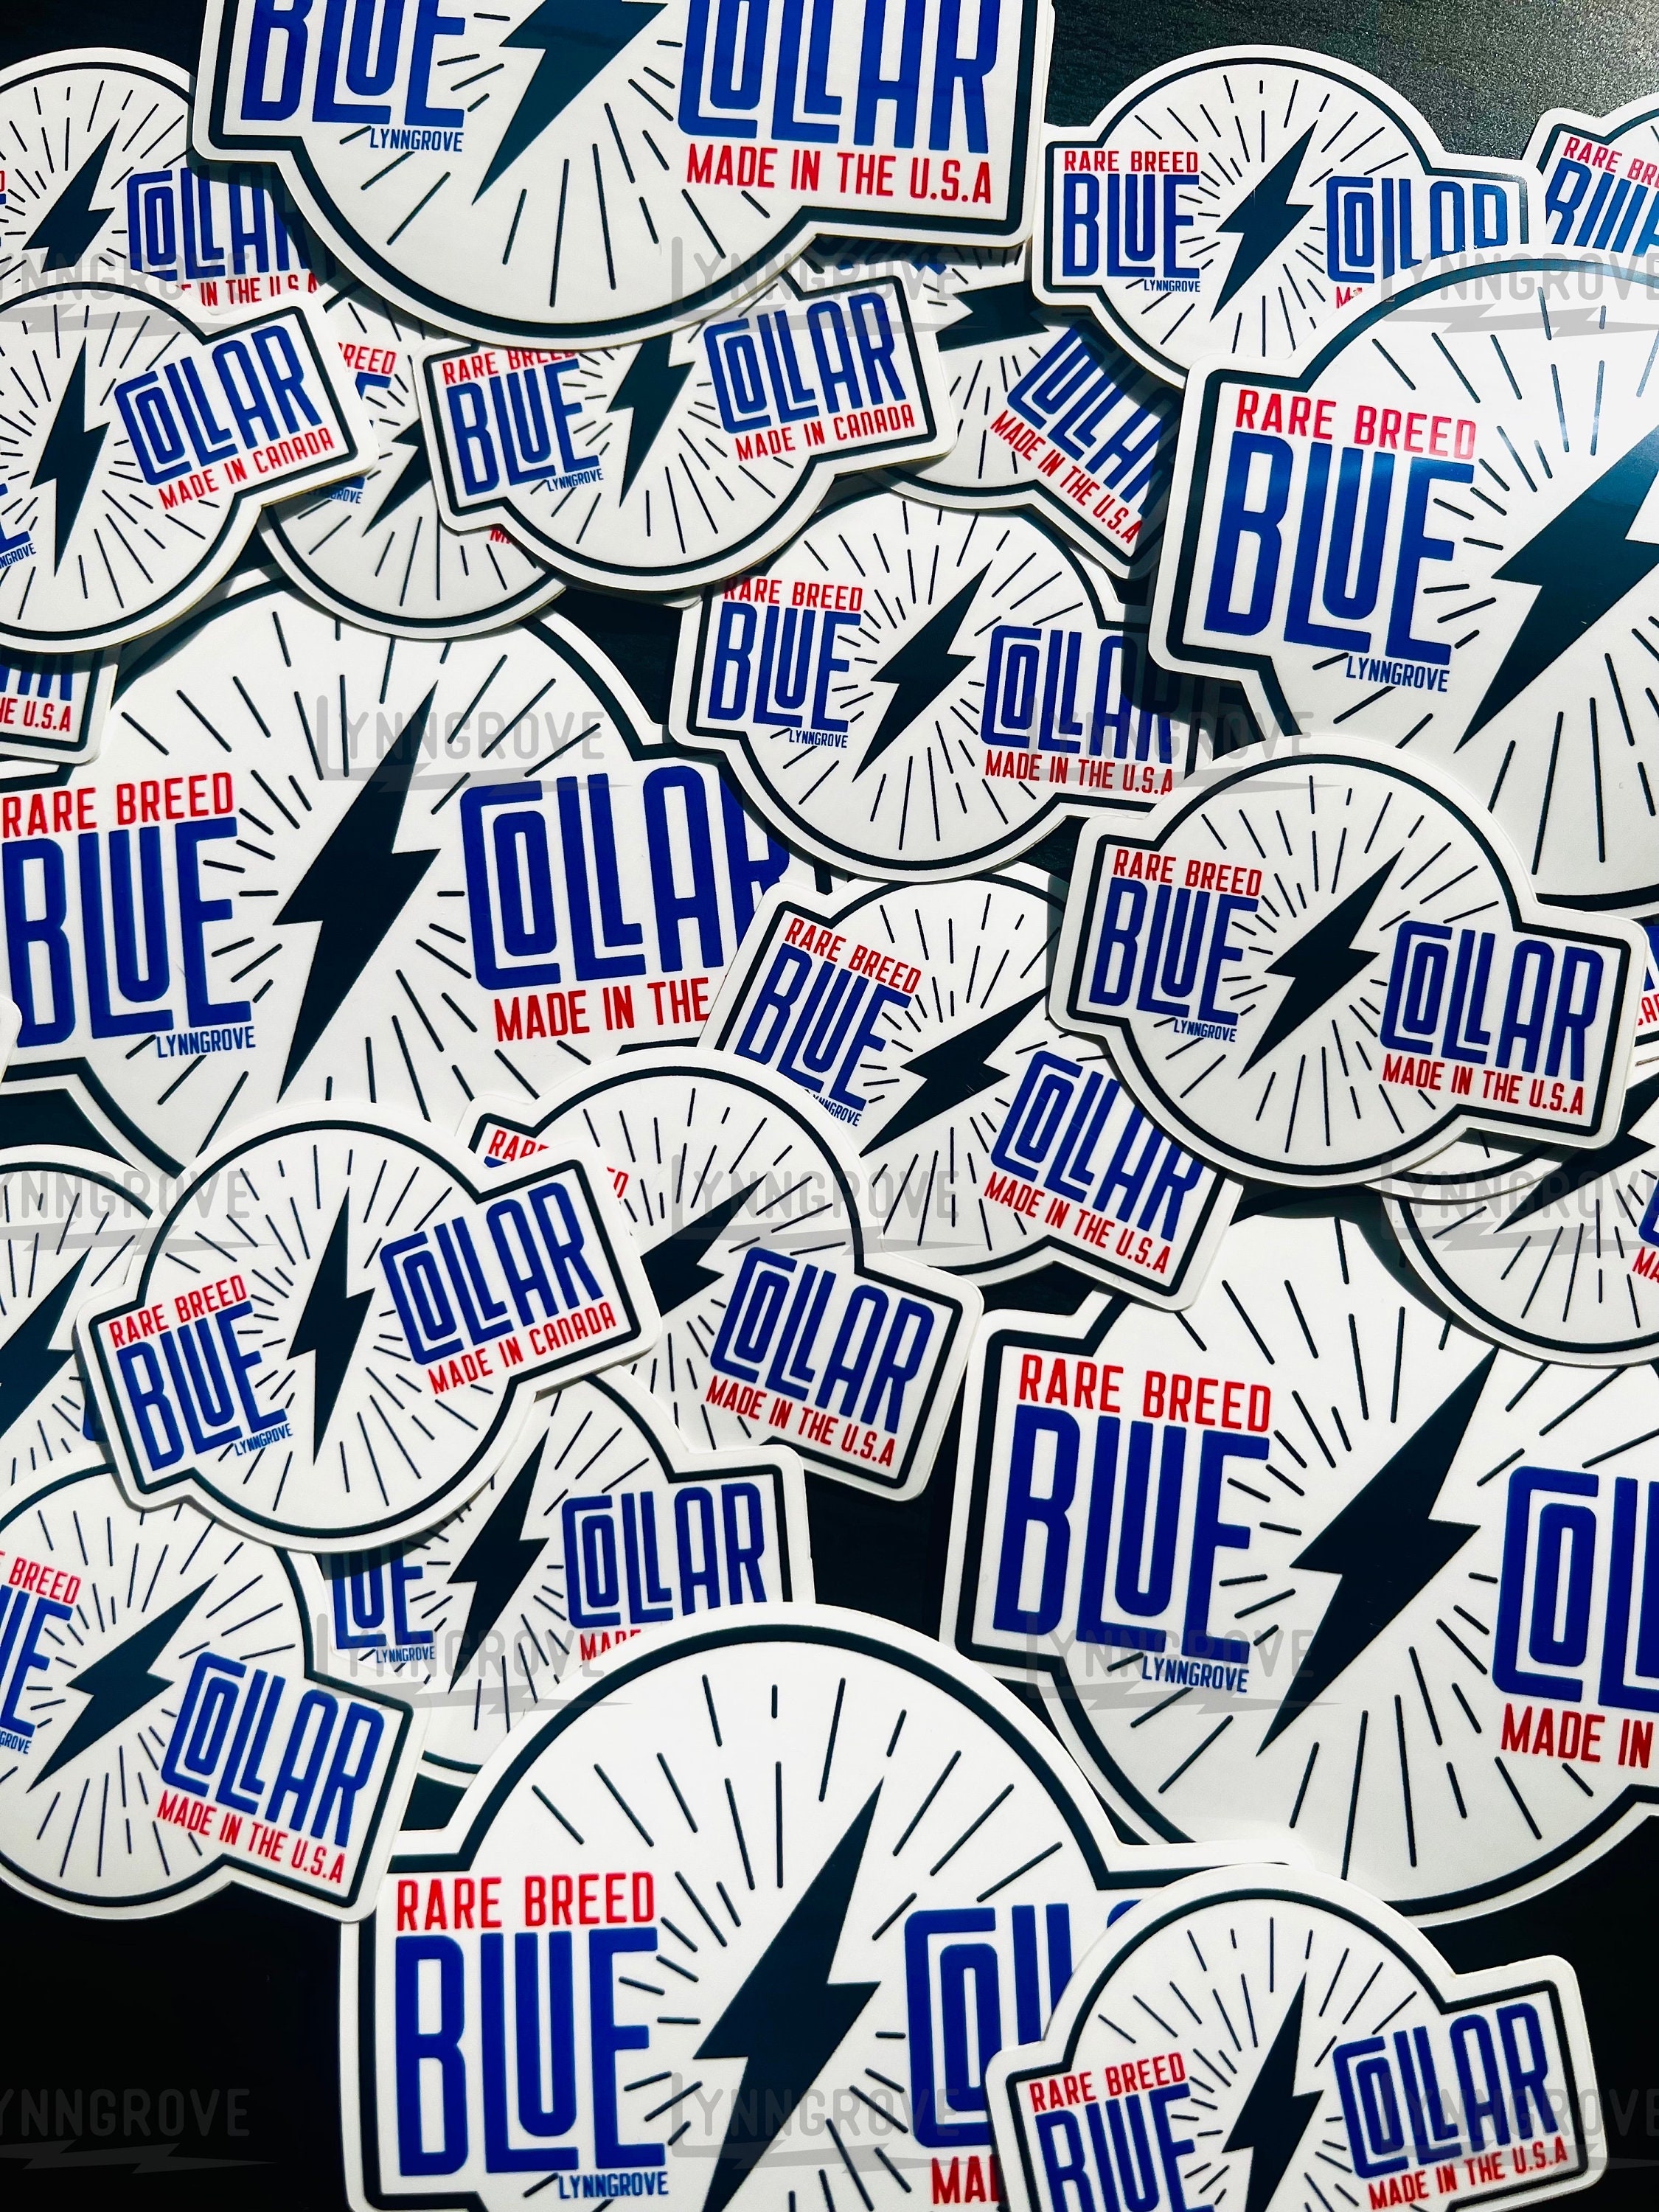 Blue Collar Cowboy Sticker Weatherproof Vinyl , Lineman Sticker , Hard Hat  Sticker , Blue Collar Stickers 